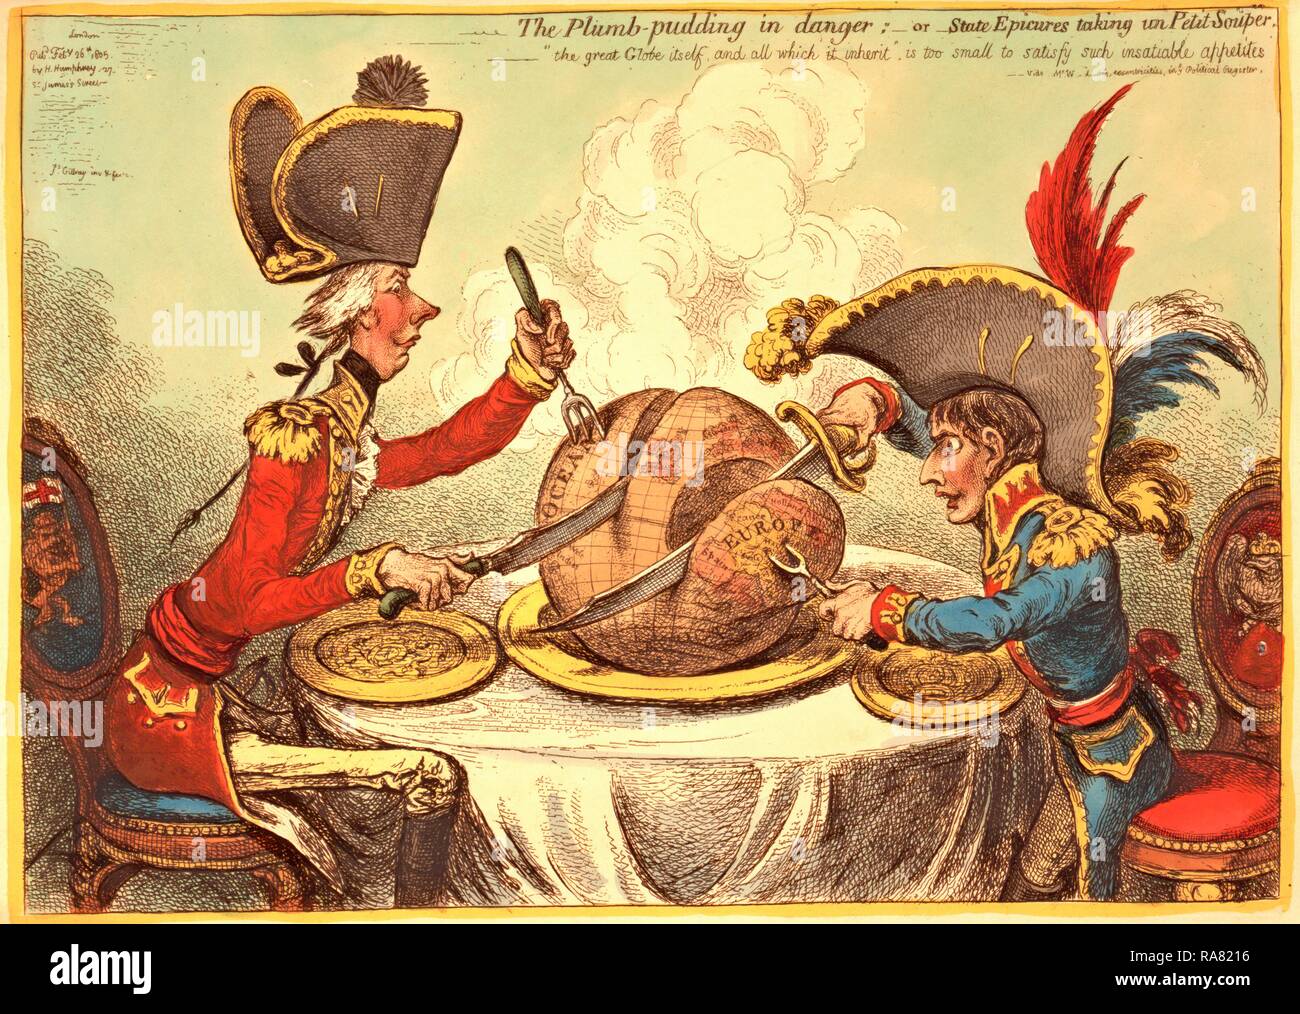 Le boudin d'aplomb en danger, ou état, jouisseur de prendre un petit souper, William Pitt, portant un uniforme régimentaire repensé Banque D'Images